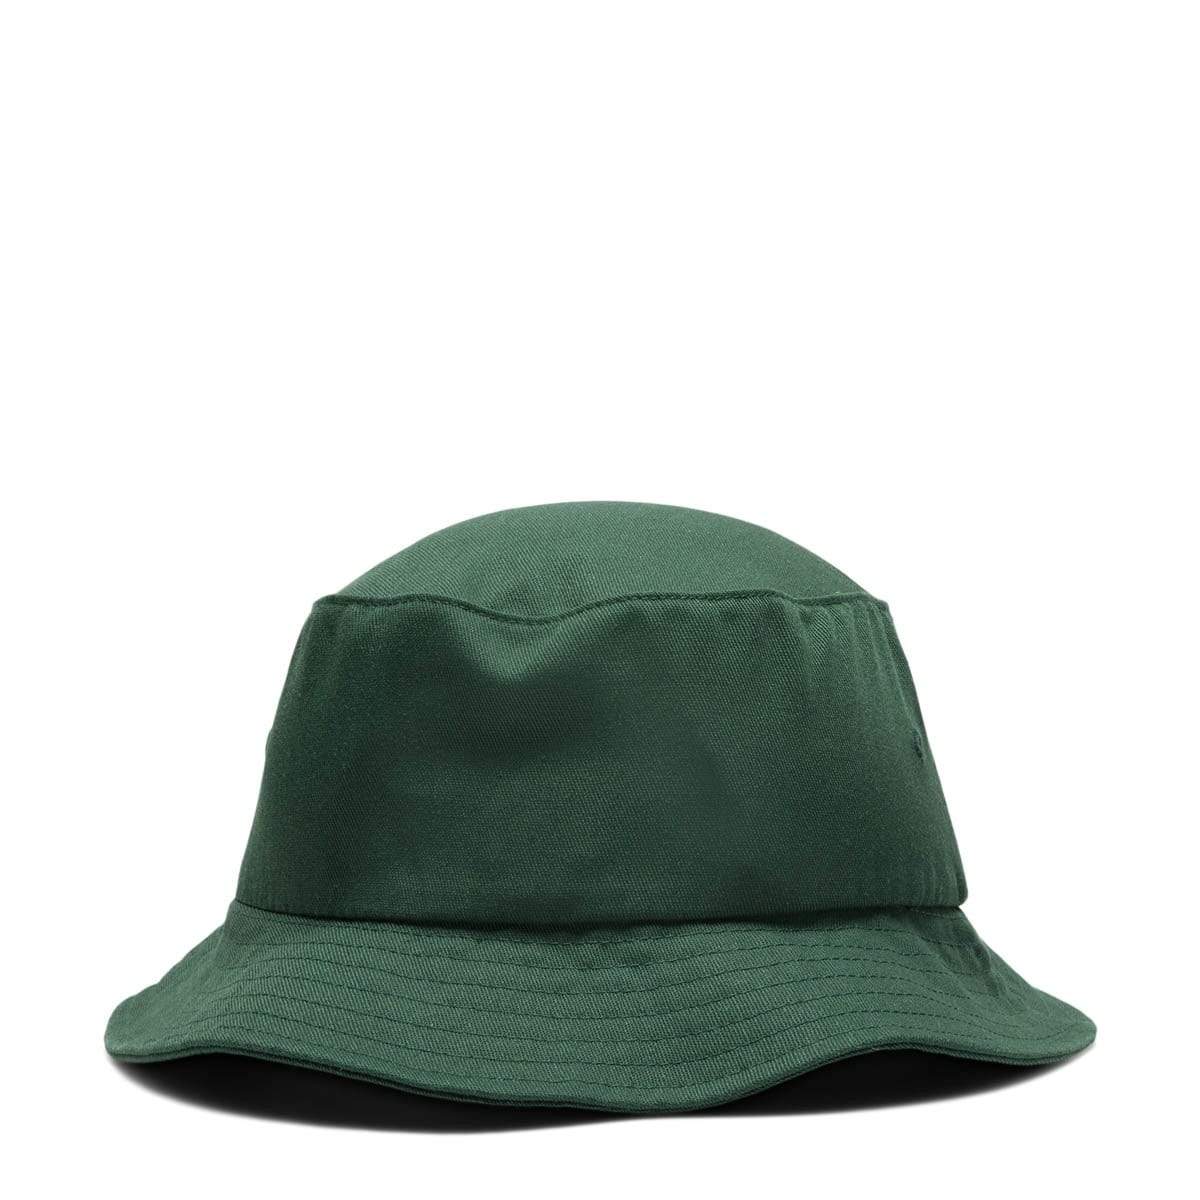 Real Bad Man Headwear GREEN / O/S / RBM 7005 RBM BUCKET HAT